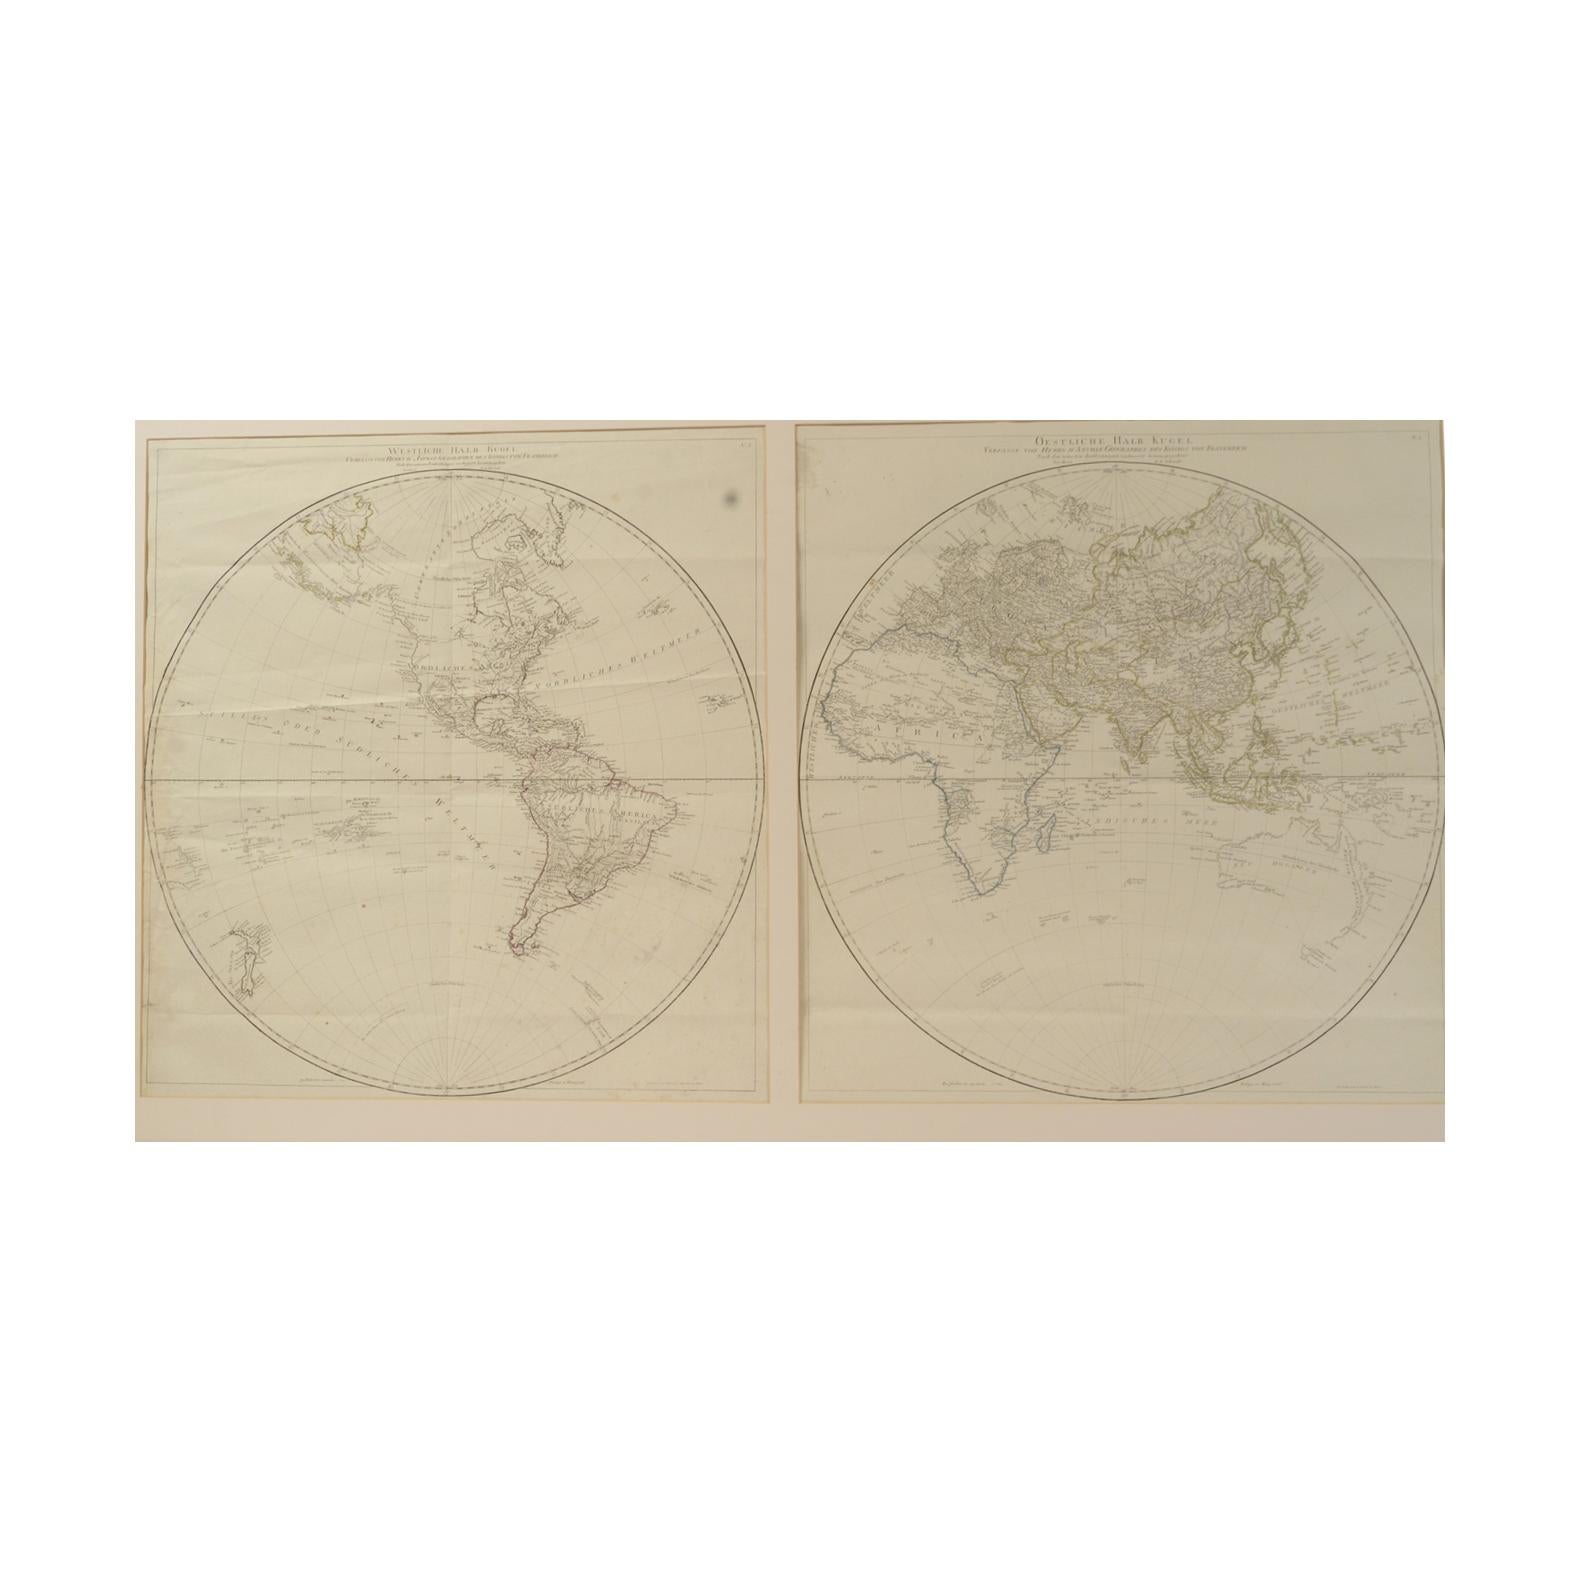 Austrian Antique World Map Published in Vienna 1786 by Franz Anton Schraembl